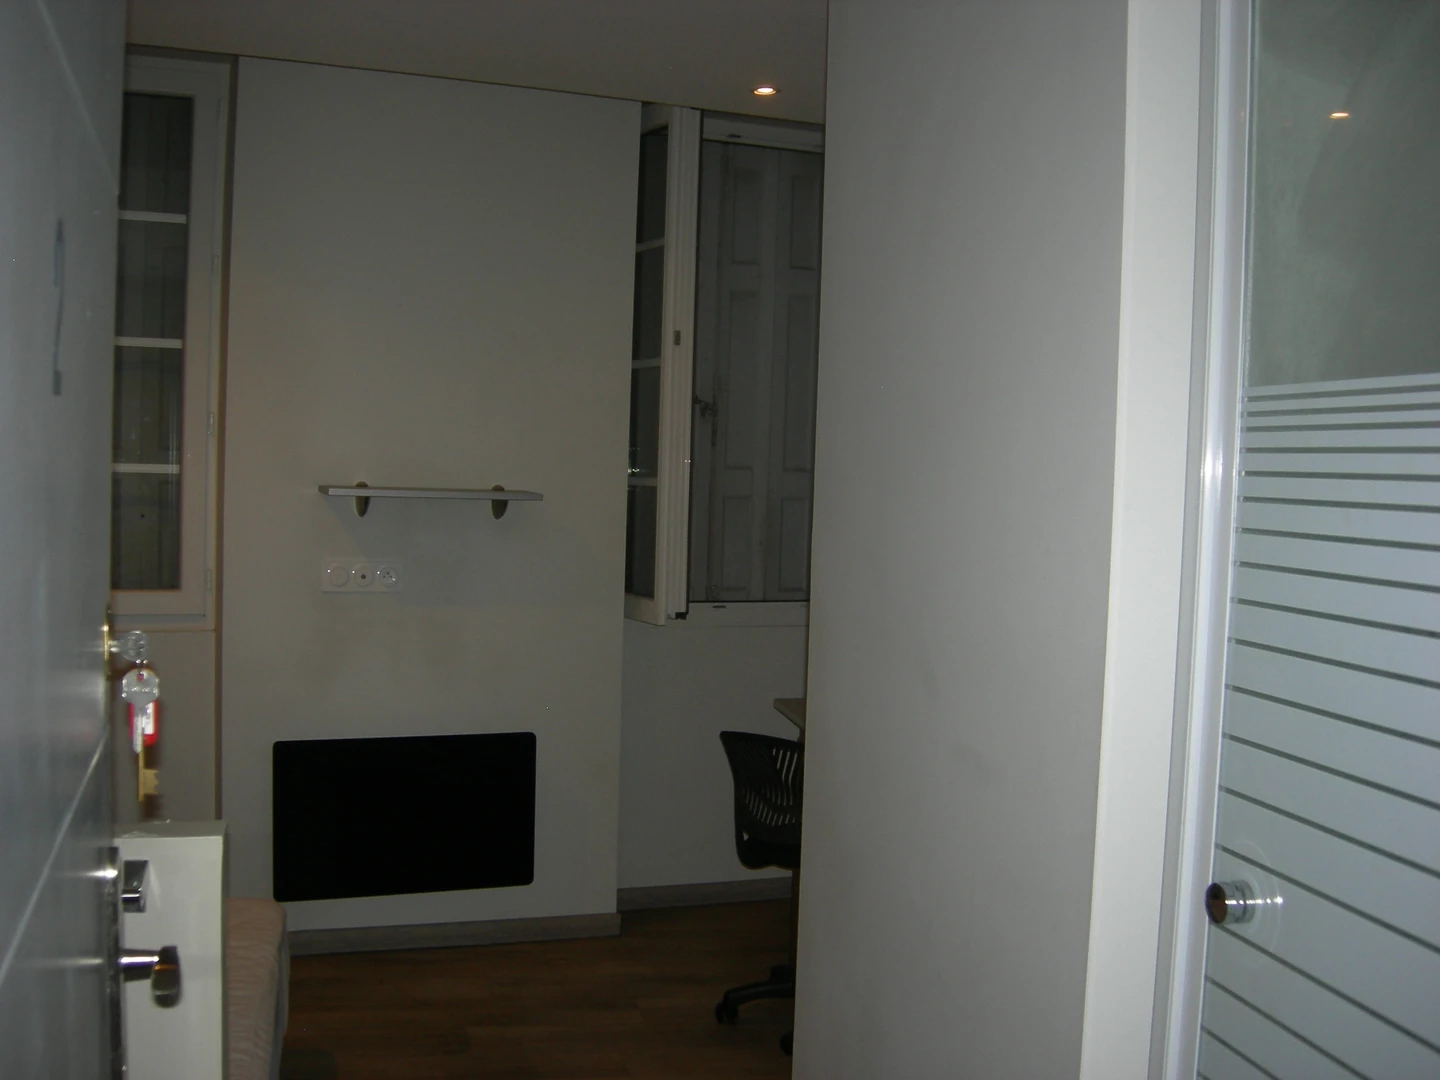 Perpignan de çift kişilik yataklı kiralık oda